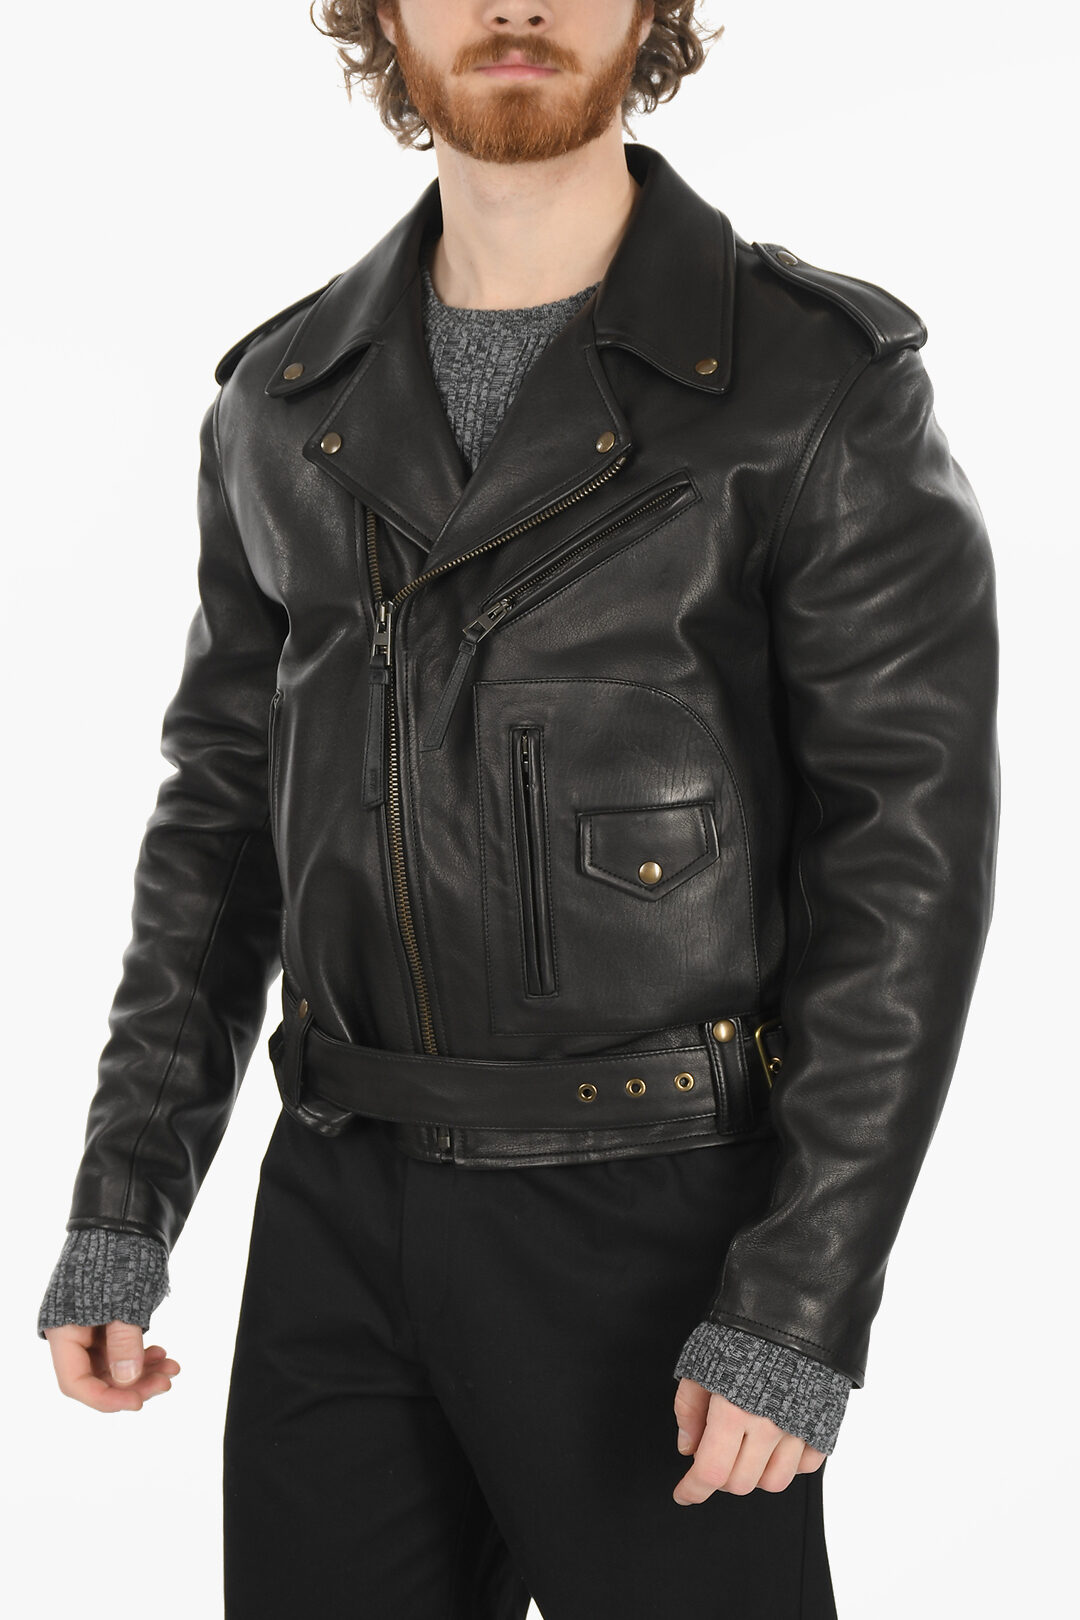 Loewe Leather Biker Jacket with Belt men - Glamood Outlet